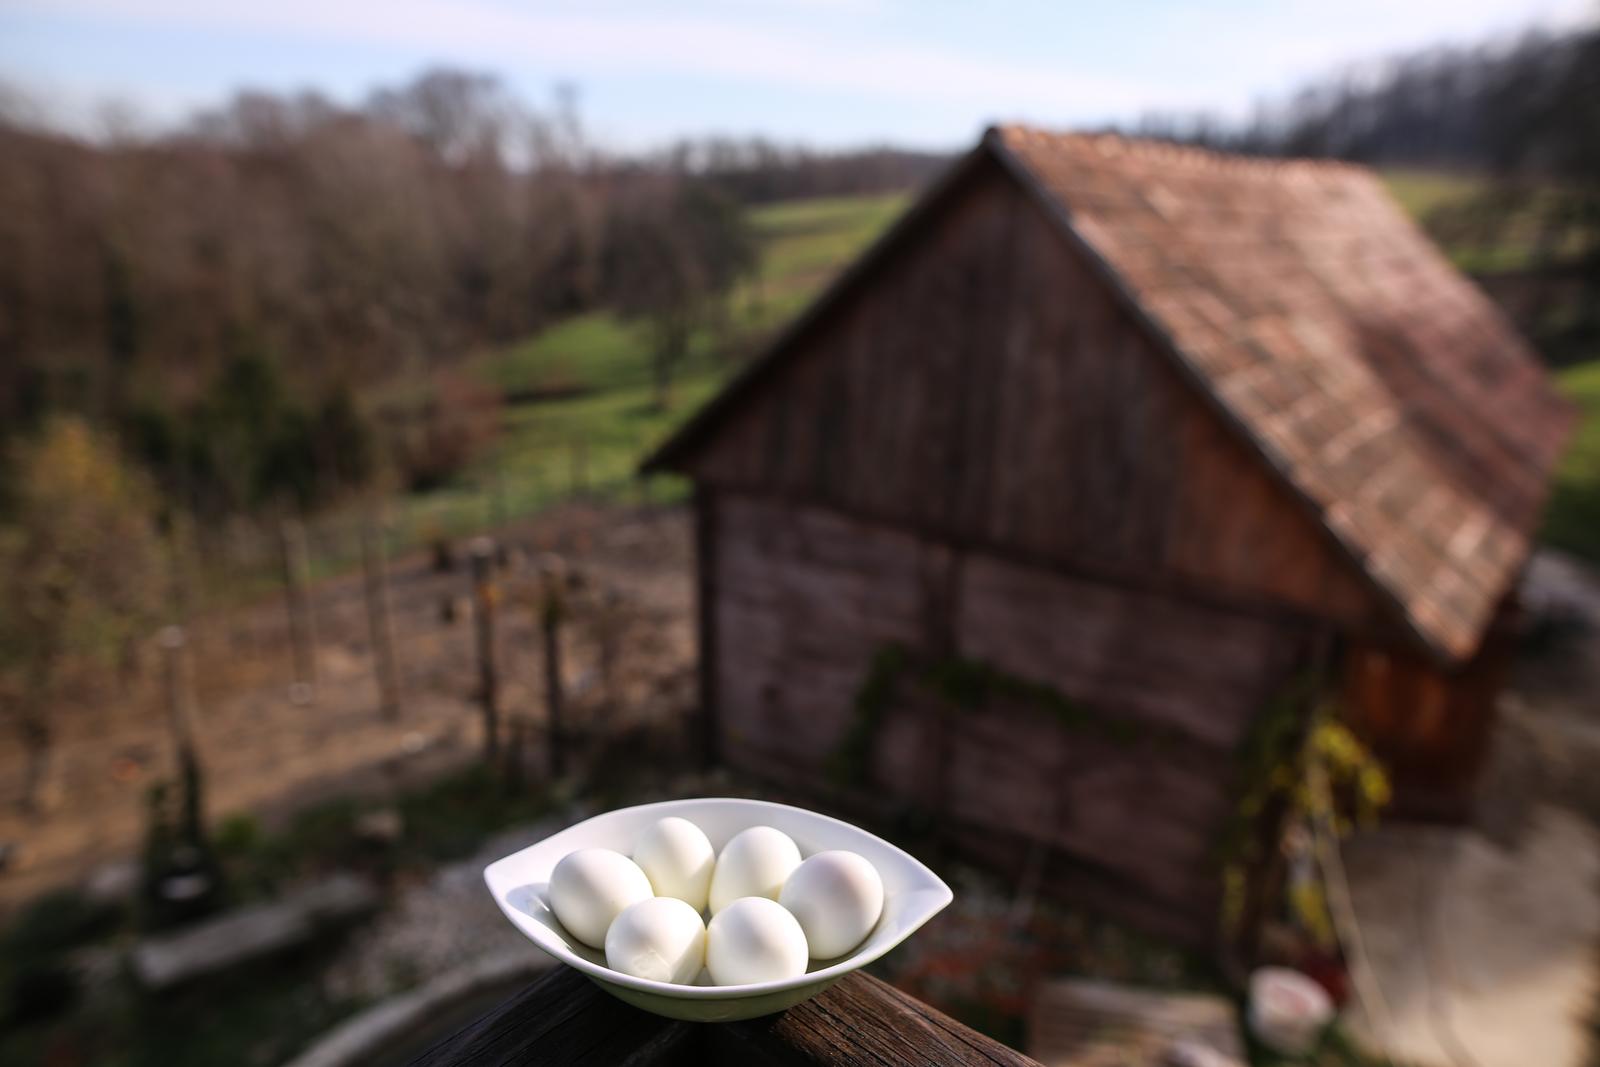 28.11.2017., Breznica - Bozica Zezelj, saptacica kokama, sa suprugom se bavi uzgojem eko jaja koja se izvoze u Veliku Britaniju za tvrtku Lush koja proizvodi kozmetiku. "nPhoto: Igor Soban/PIXSELL